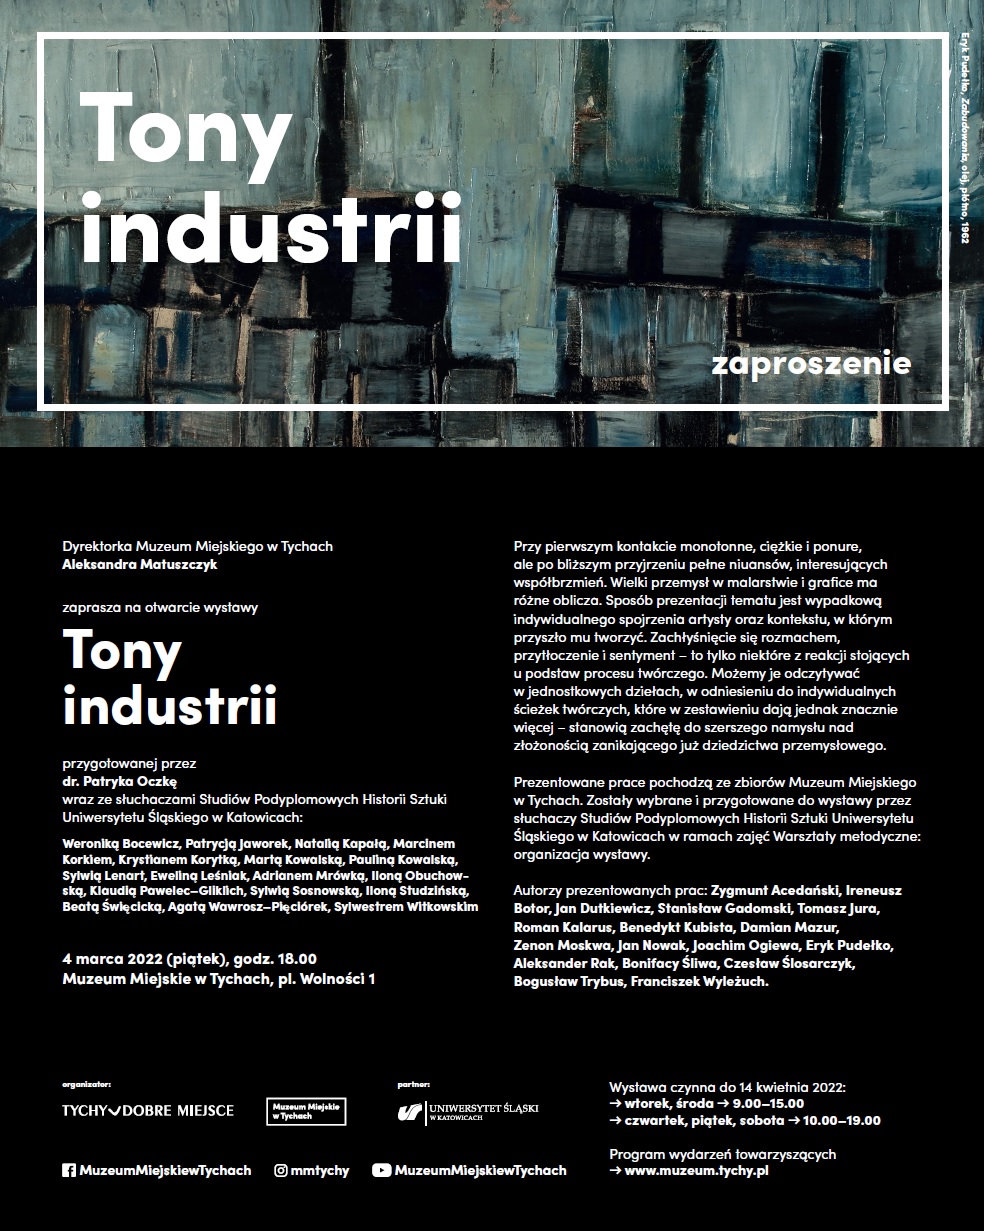 plakat informujący o wystawie "Tony industrii"